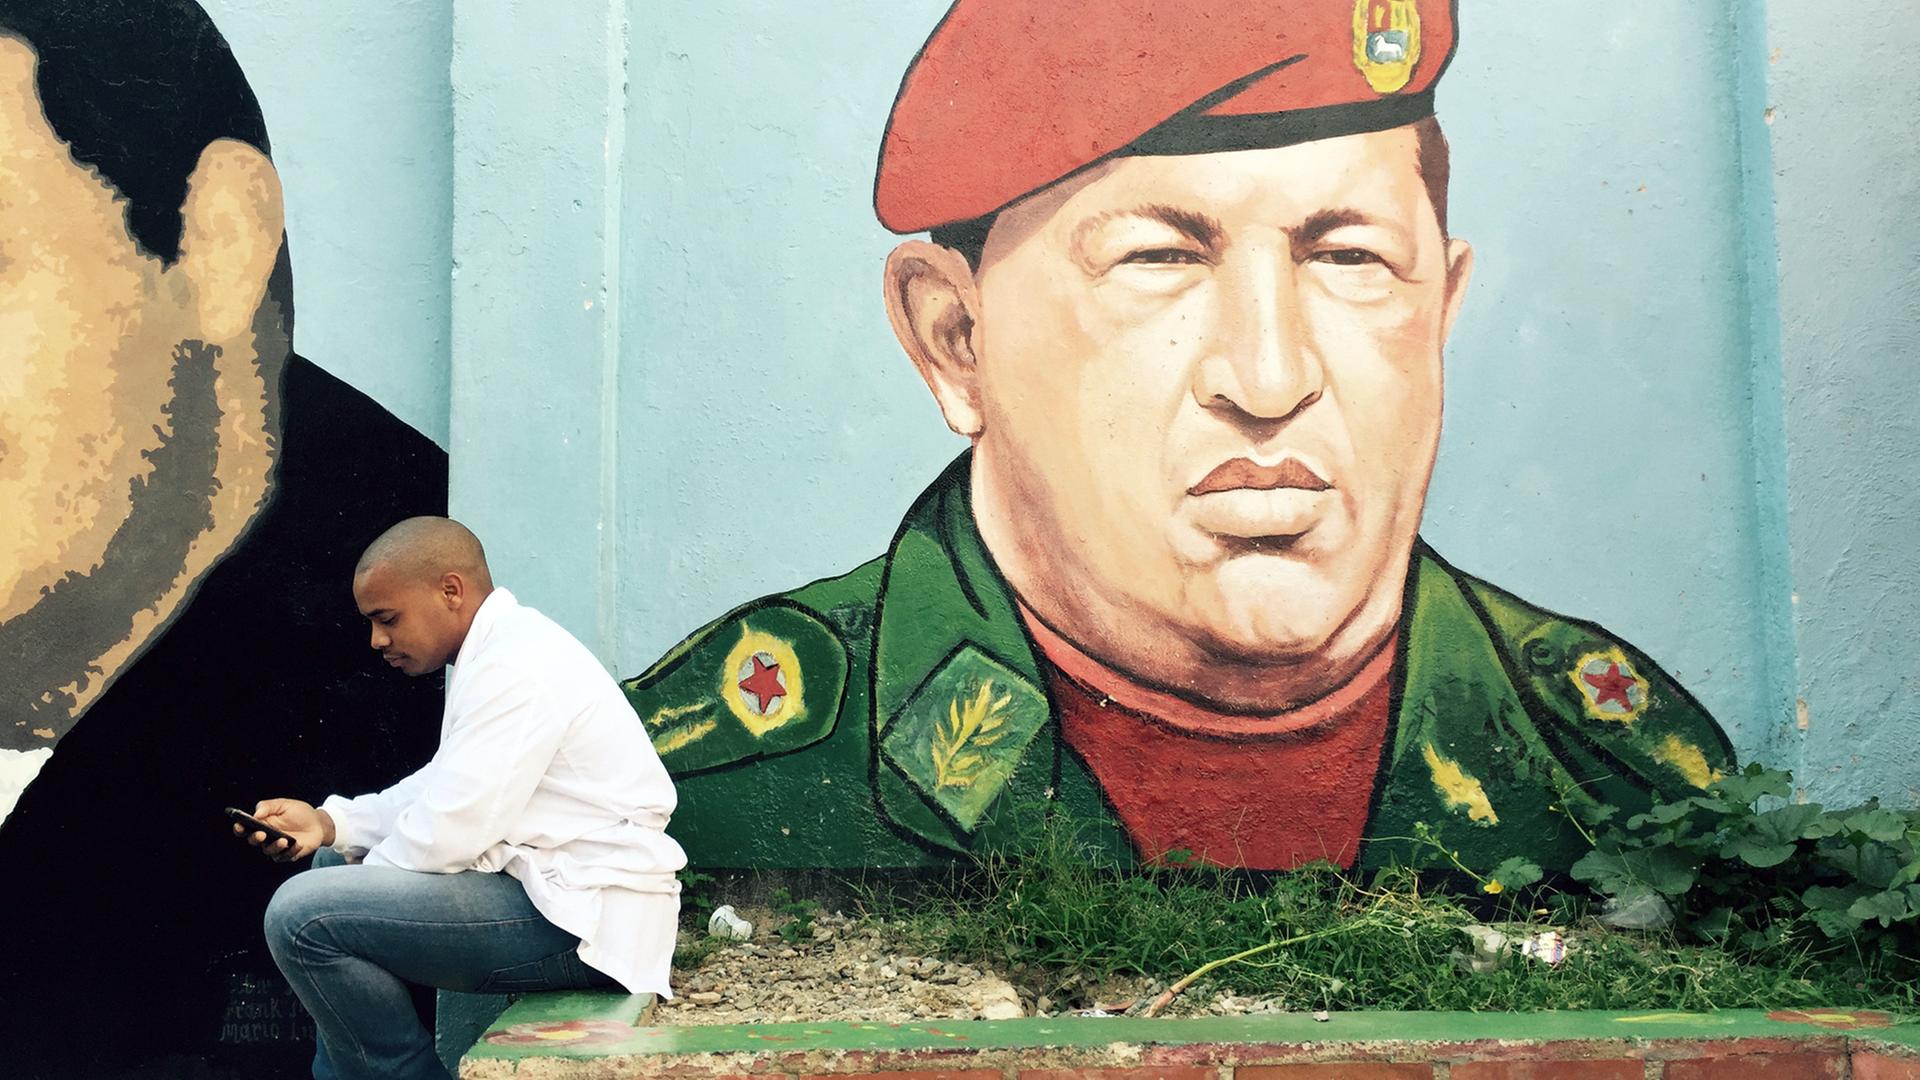 Ein junger Mann sitzt vor einem Graffiti von Hugo Chávez